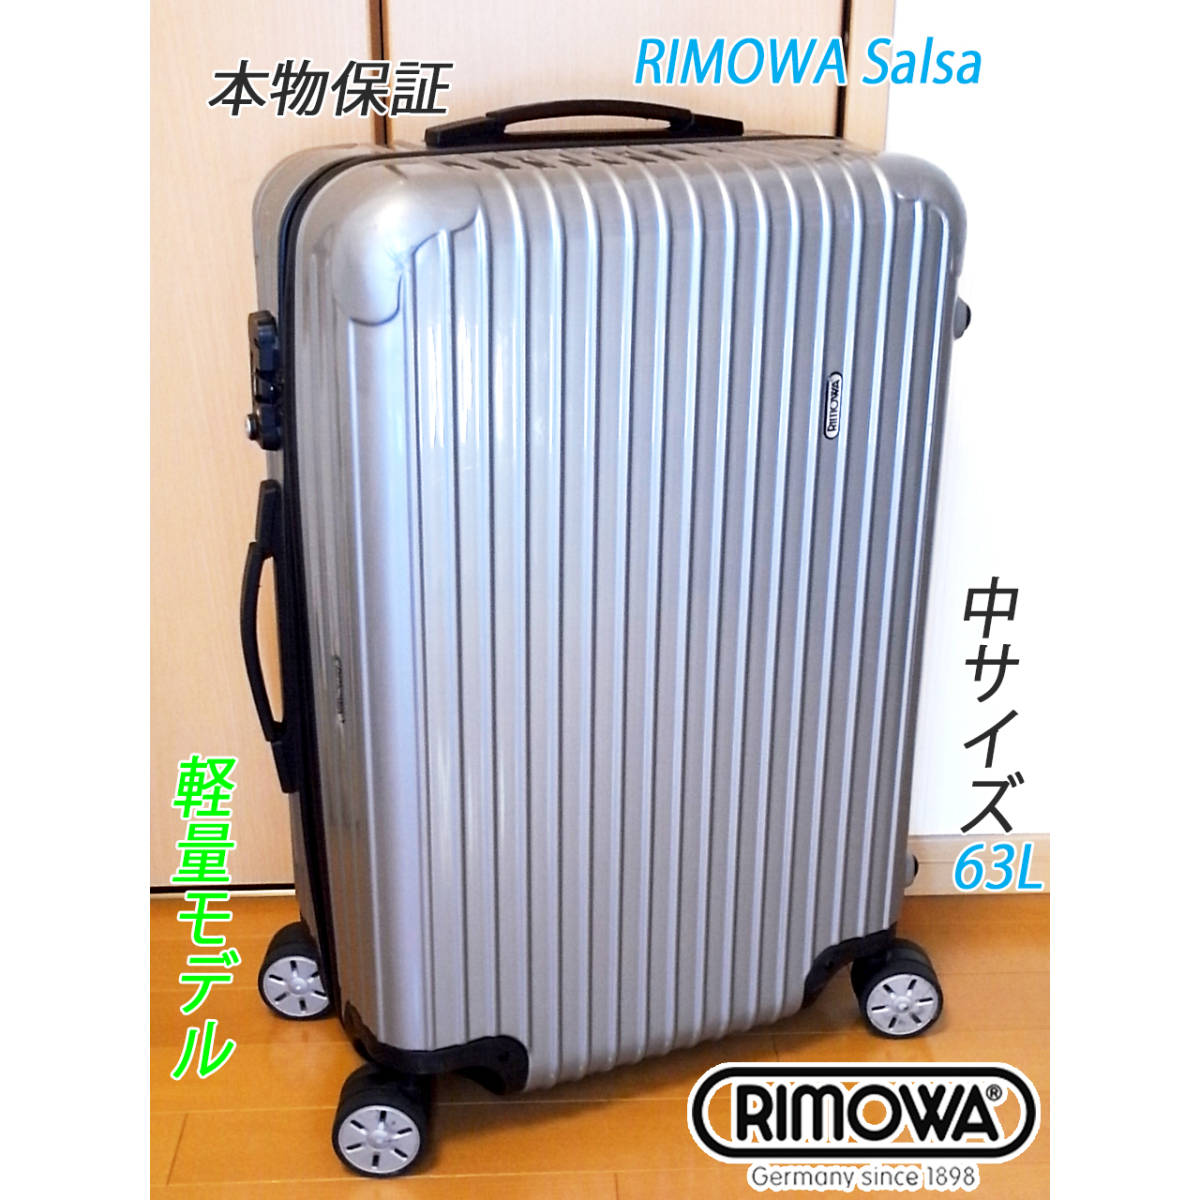 本物 良品 美品 RIMOWA Salsa/リモワ サルサ ベストサイズ 63L 超軽量